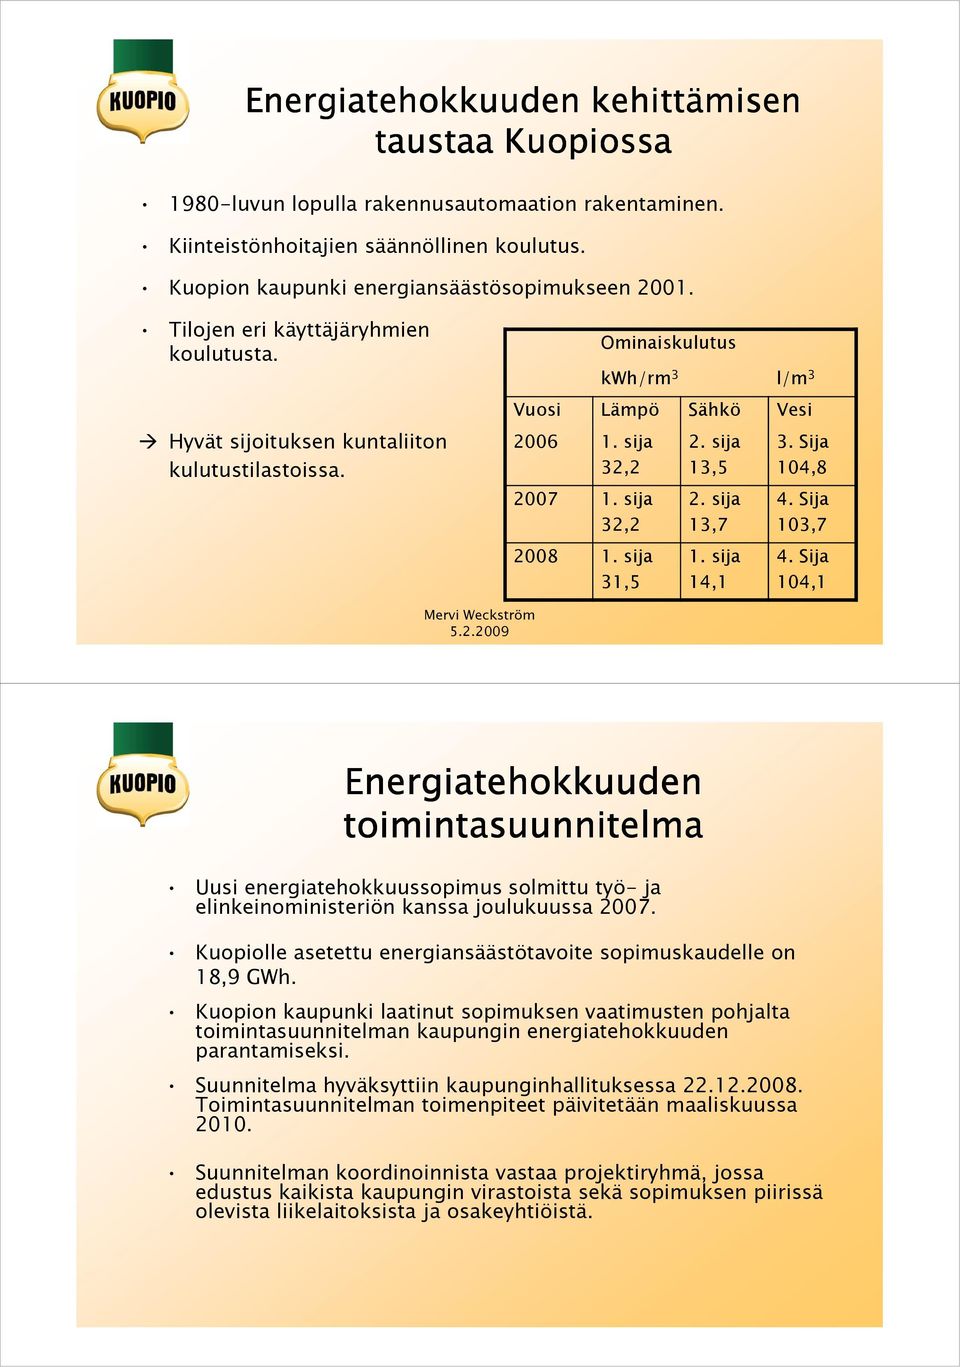 sija 13,5 2. sija 13,7 1. sija 14,1 3. Sija 104,8 4. Sija 103,7 4. Sija 104,1 Mervi Weckström 5.2.2009 Energiatehokkuuden toimintasuunnitelma Uusi energiatehokkuussopimus solmittu työ- ja elinkeinoministeriön kanssa joulukuussa 2007.